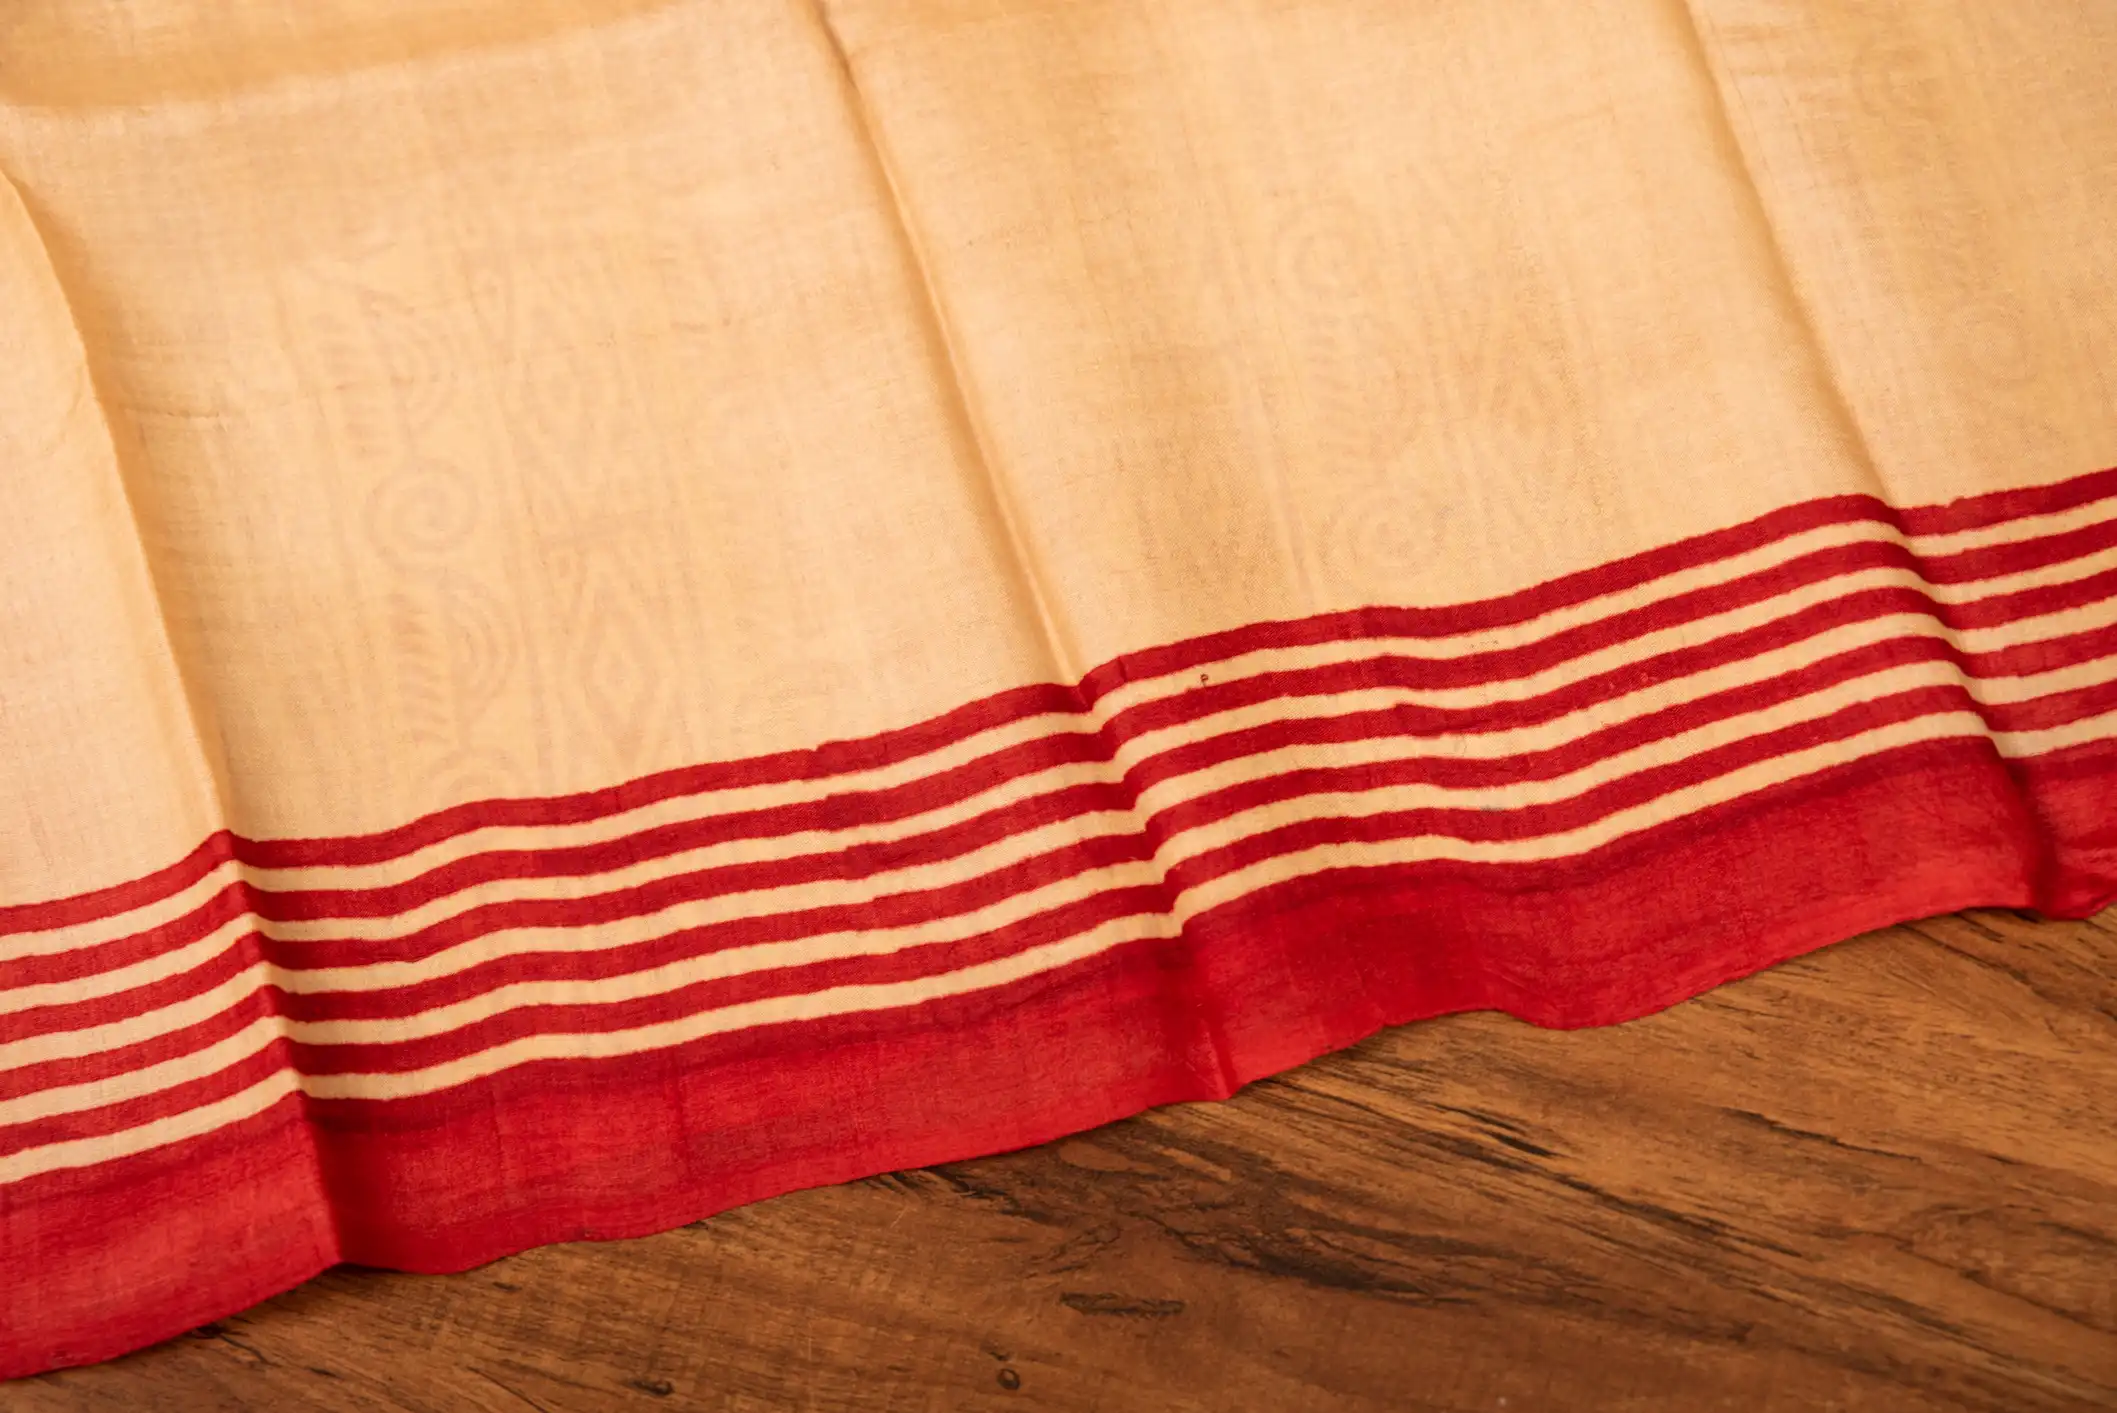 Shop this beautiful tussar saree at an affordable price-3 -Ramdhanu Ethnic